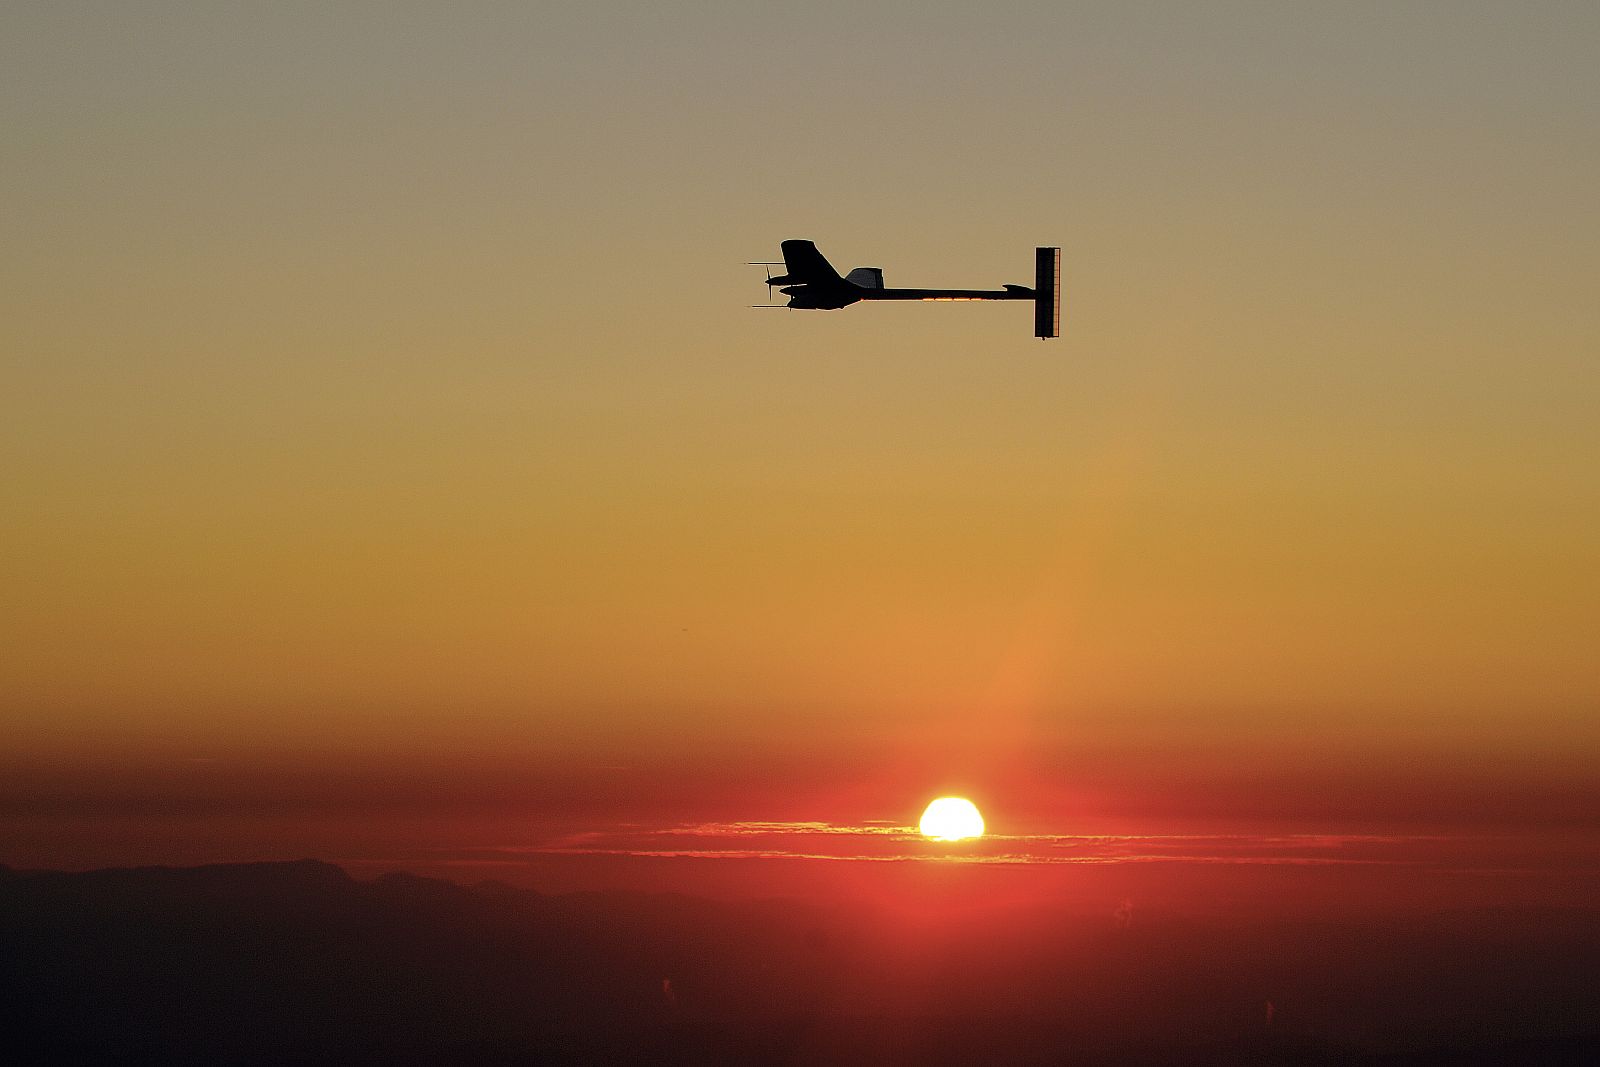 El Solar Impulse completa su reto mientras amanece